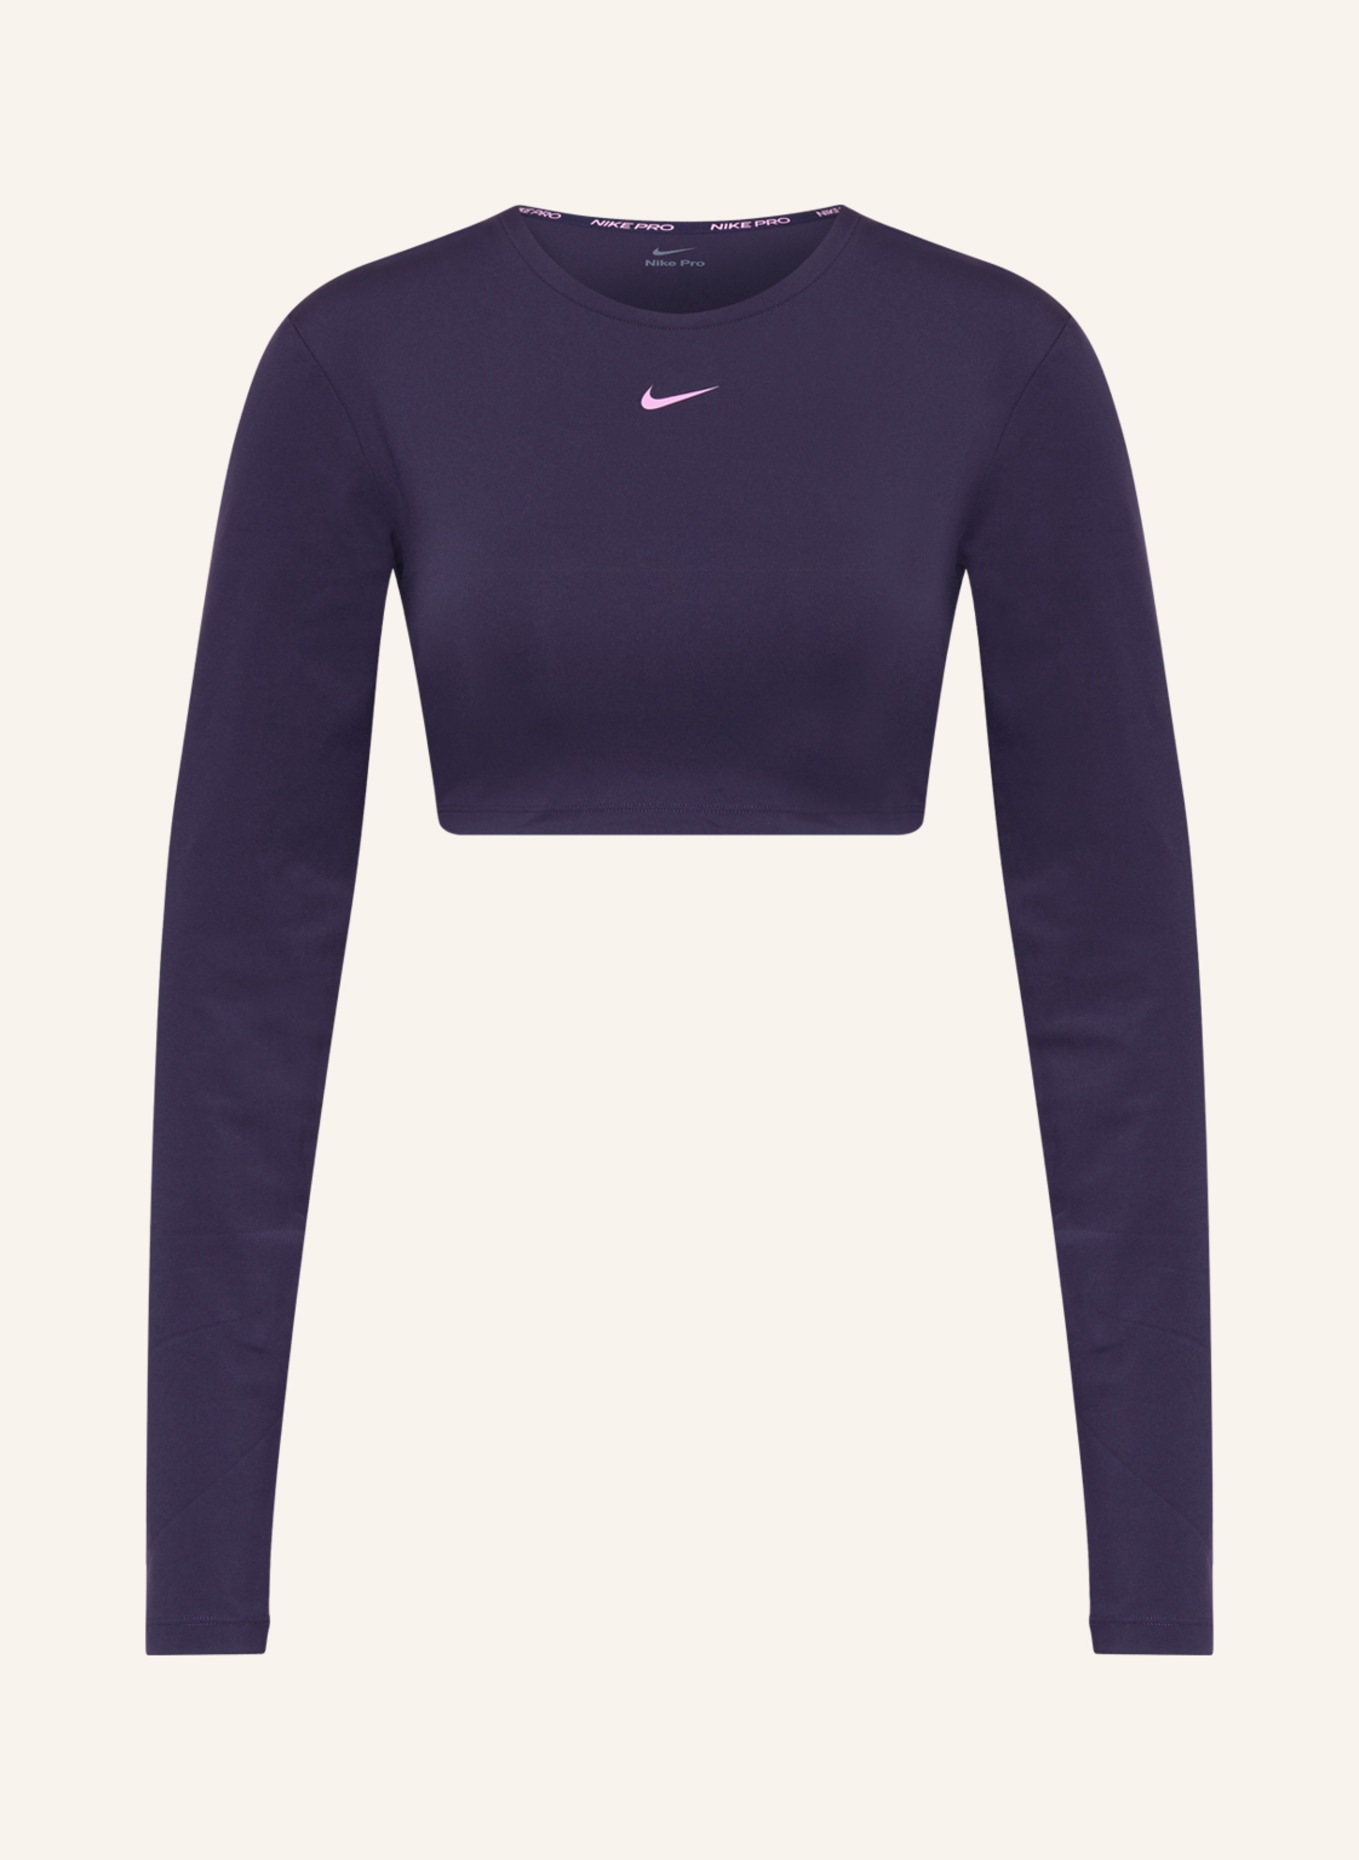 Nike Long sleeve shirt PRO DRI-FIT, Color: PURPLE (Image 1)